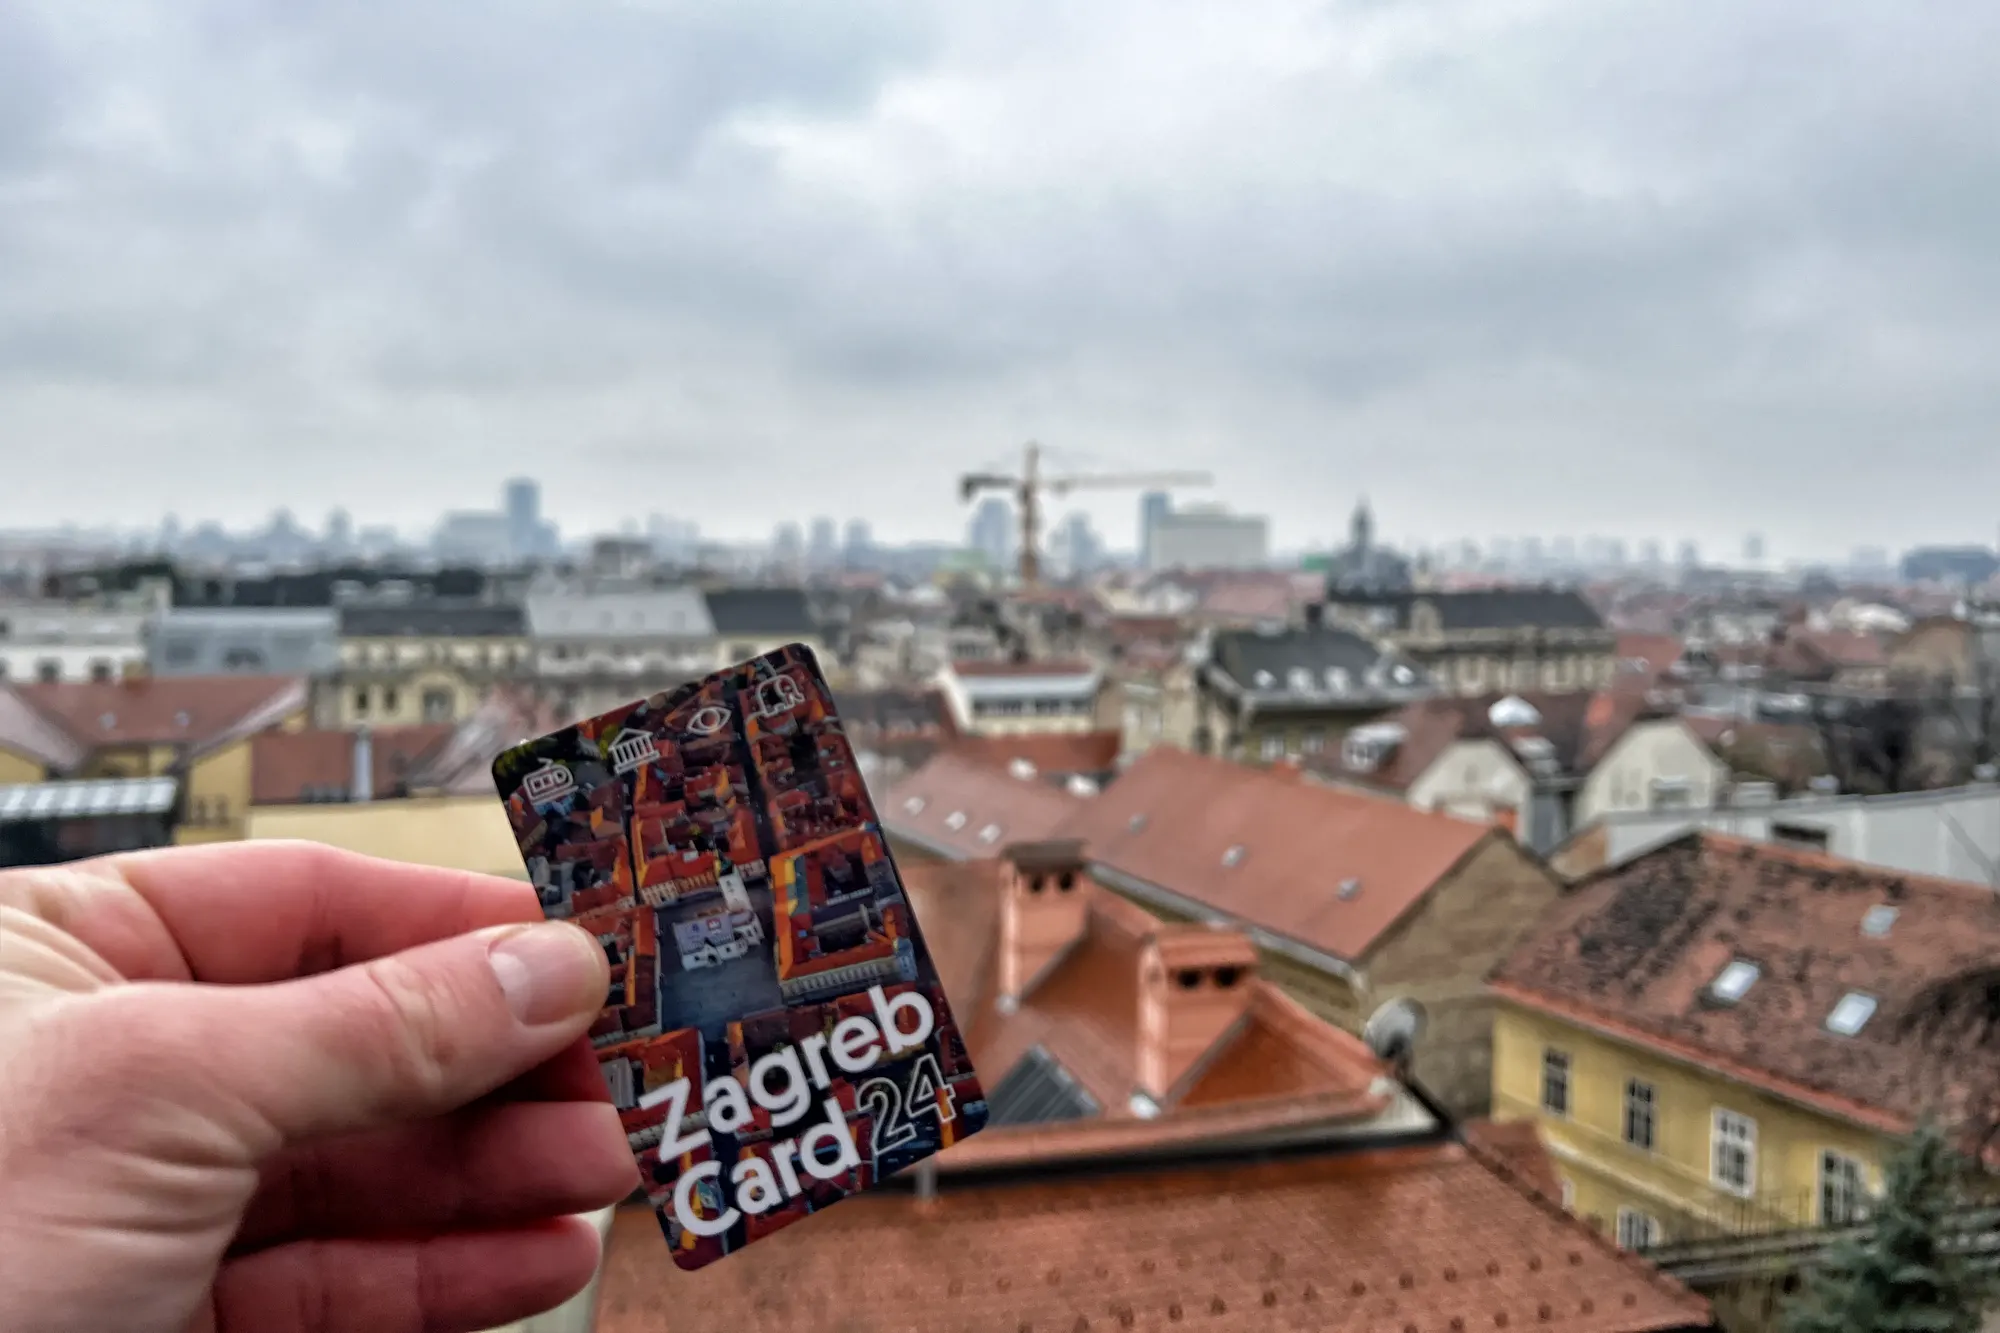 Advent Zagreb - Kroatië